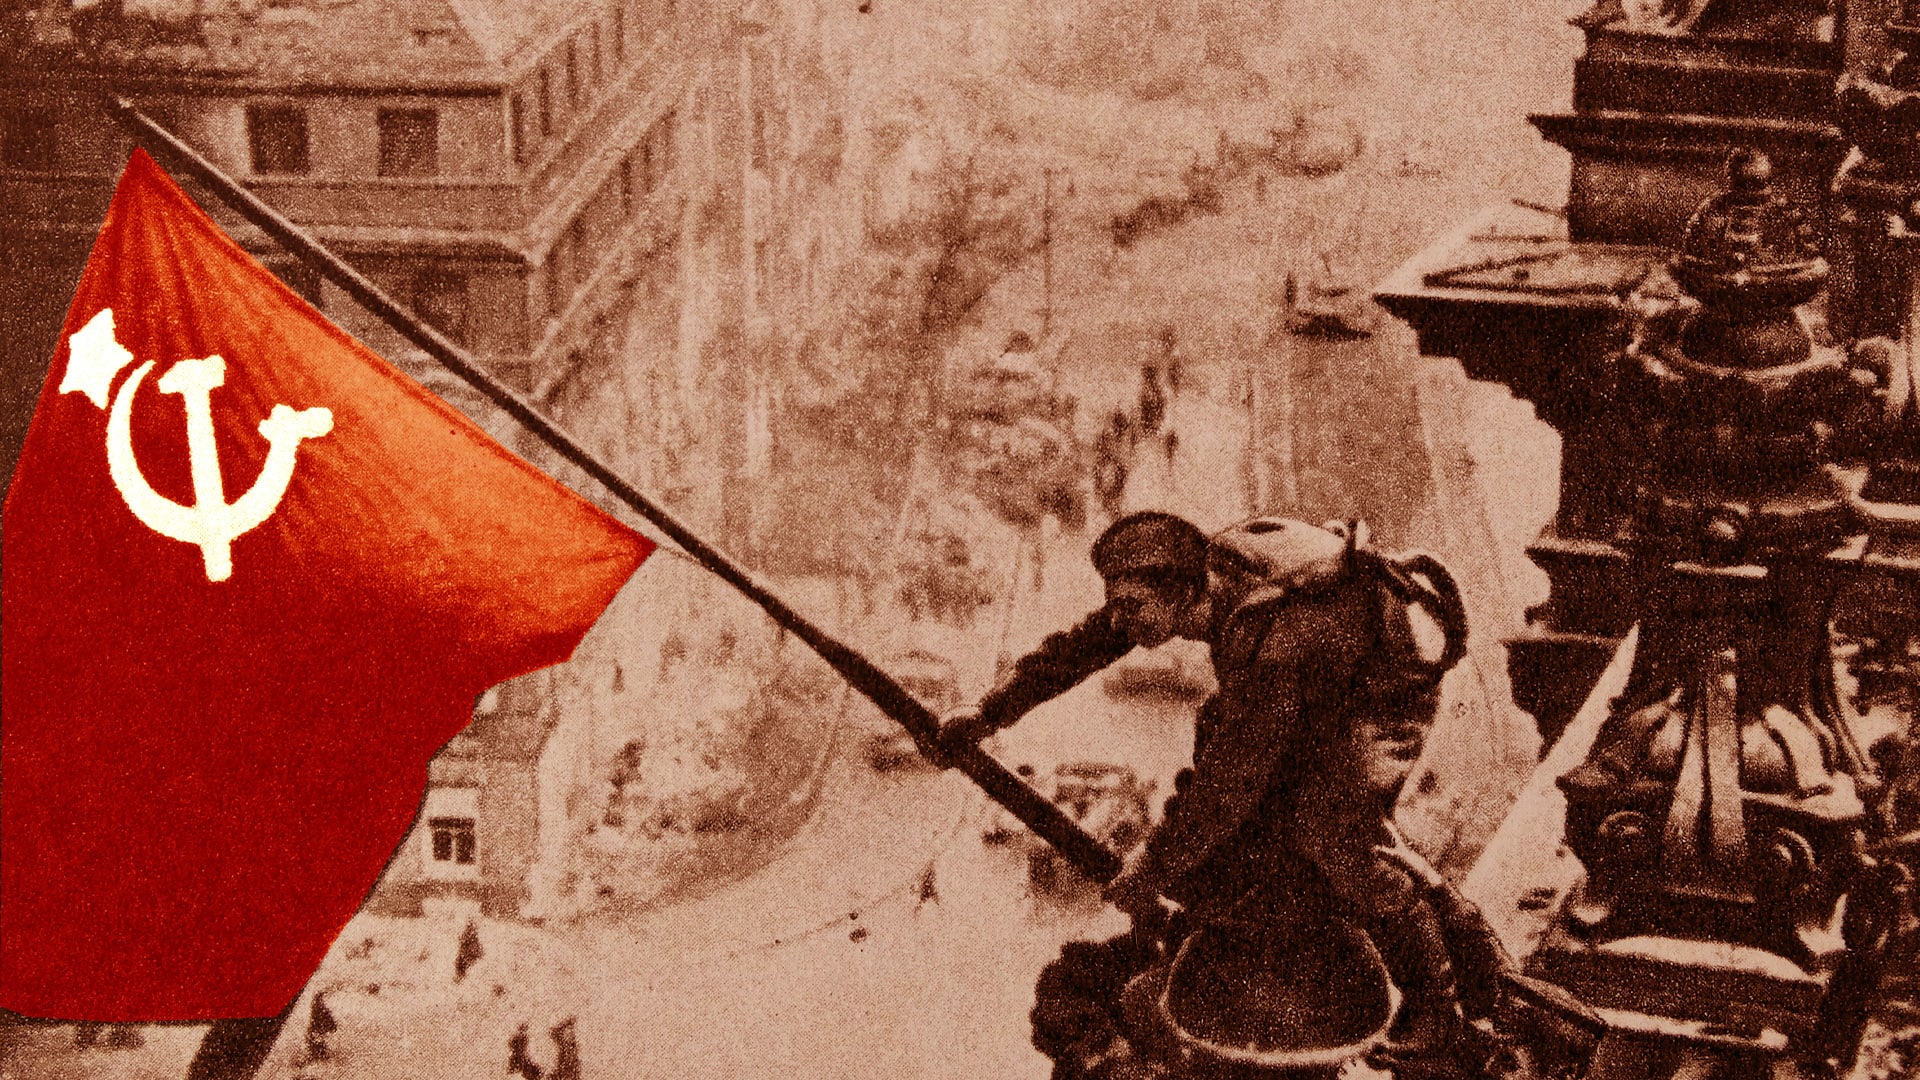 Ikonický snímek vztyčení sovětské vlajky byl součástí propagandy